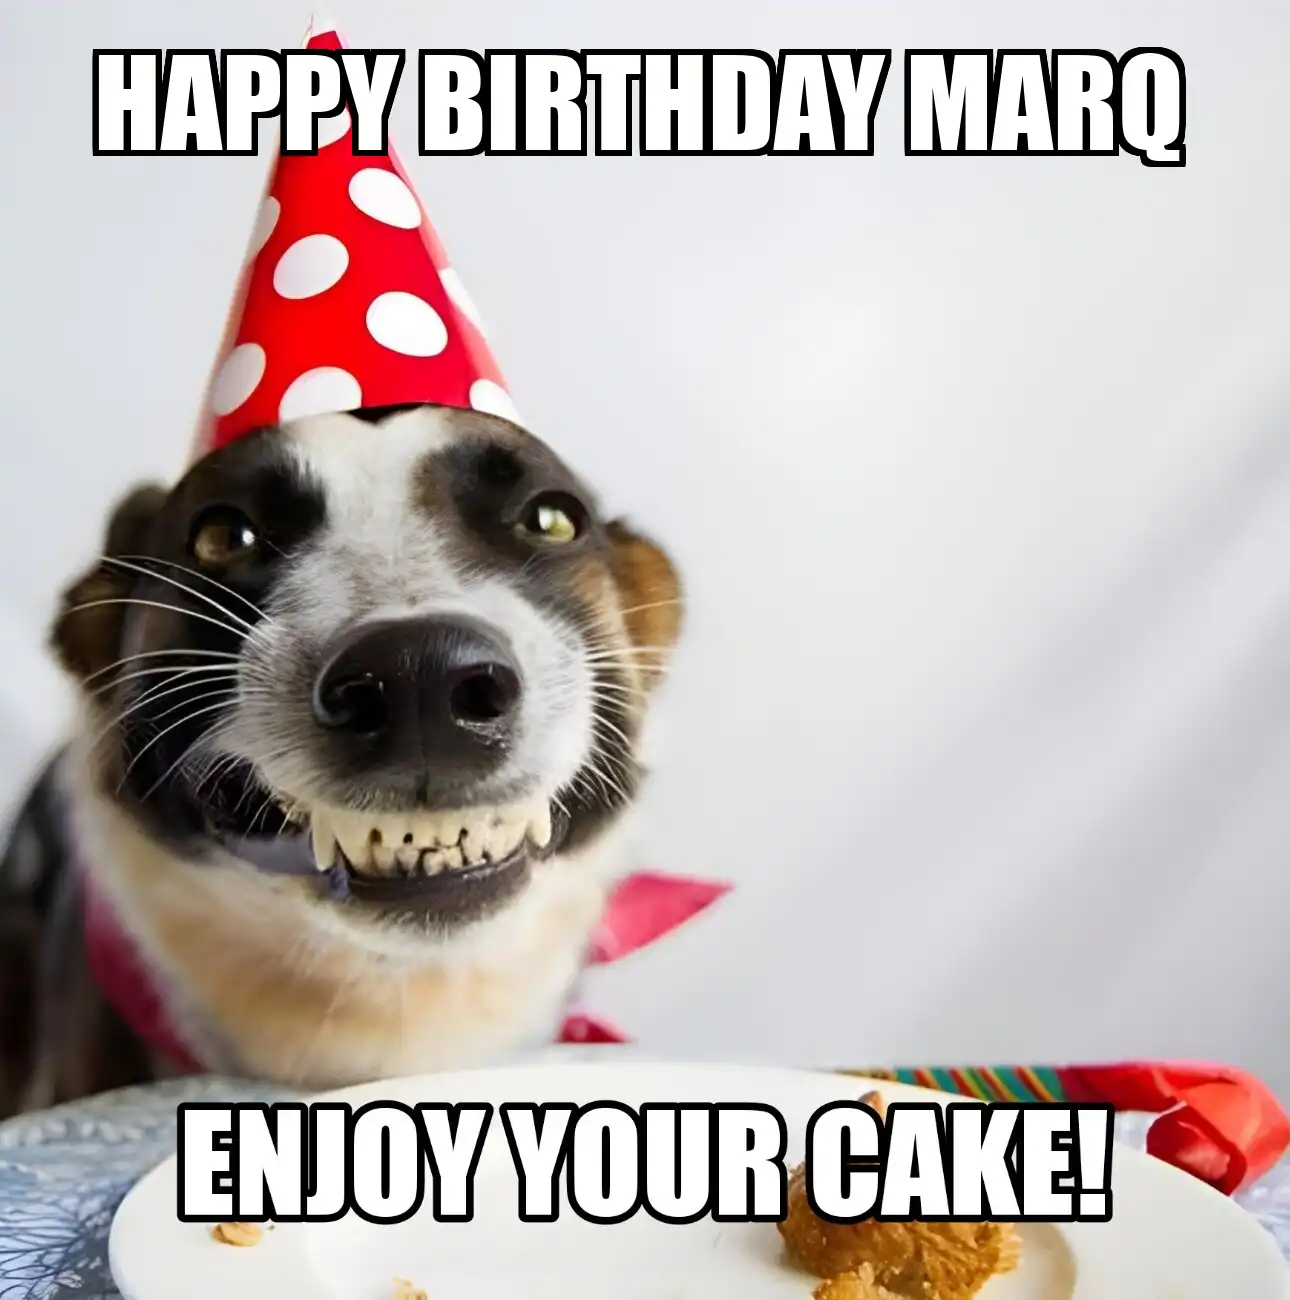 Happy Birthday Marq Enjoy Your Cake Dog Meme